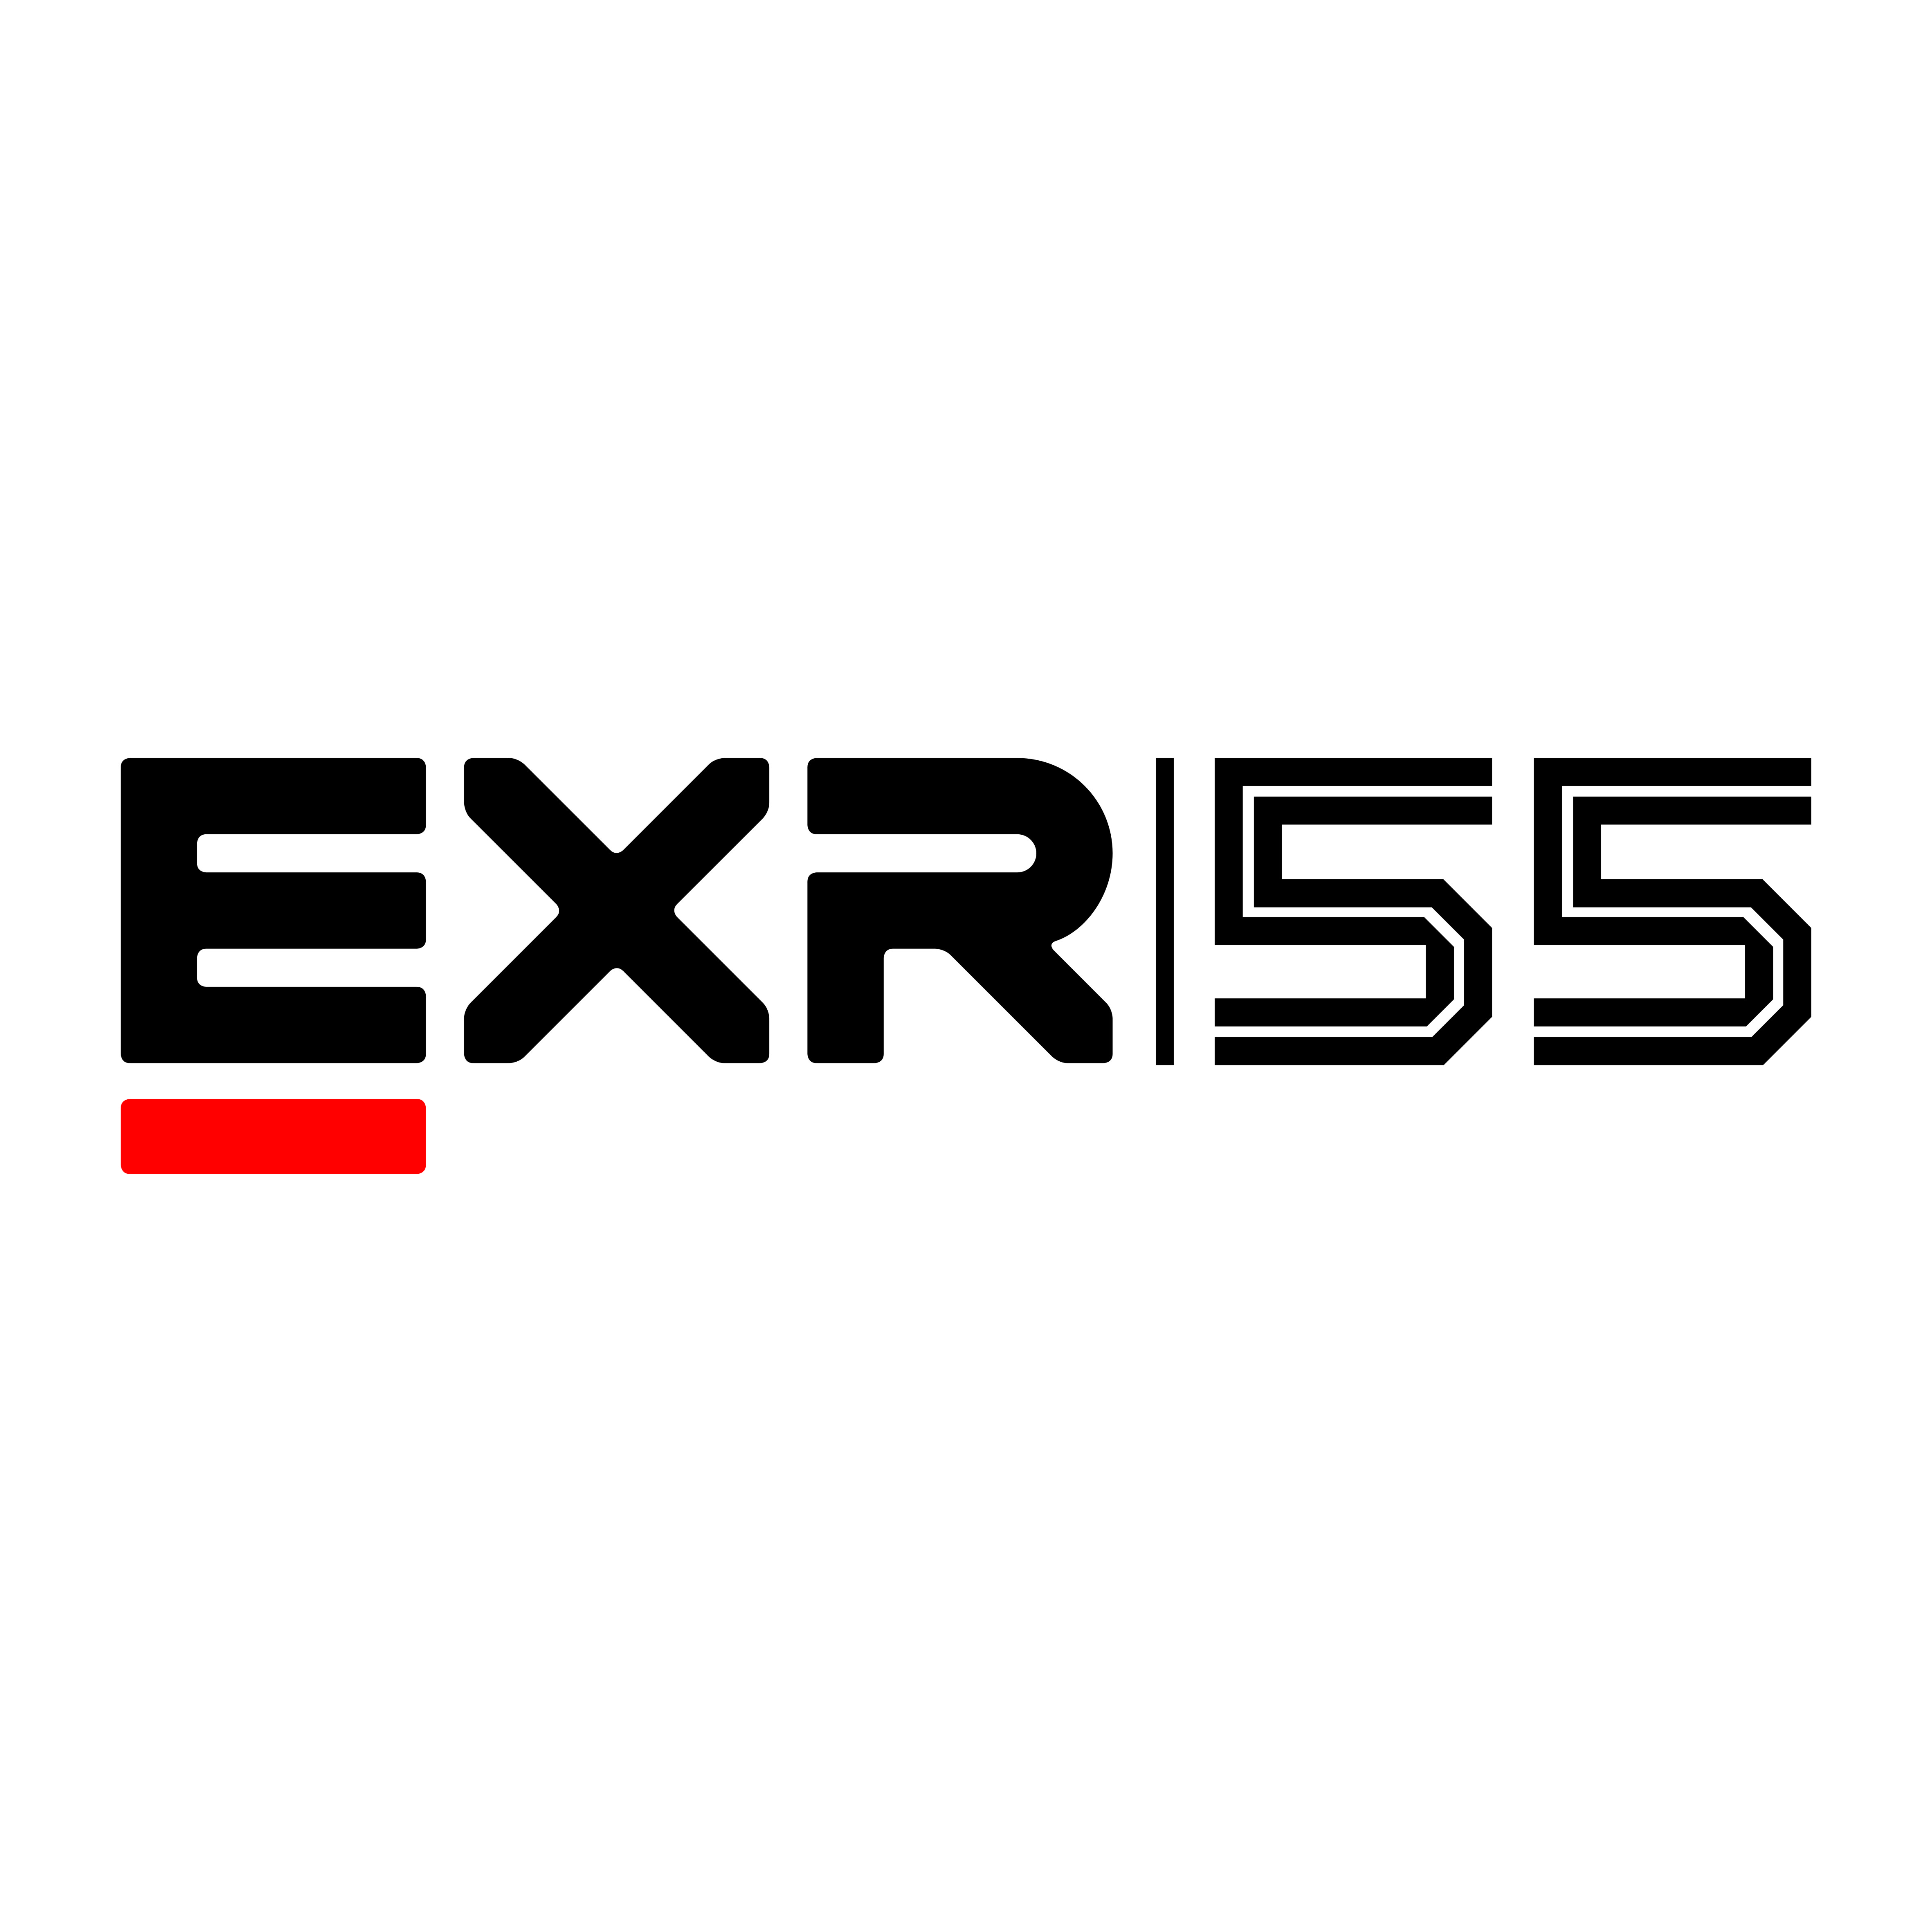 EXR55